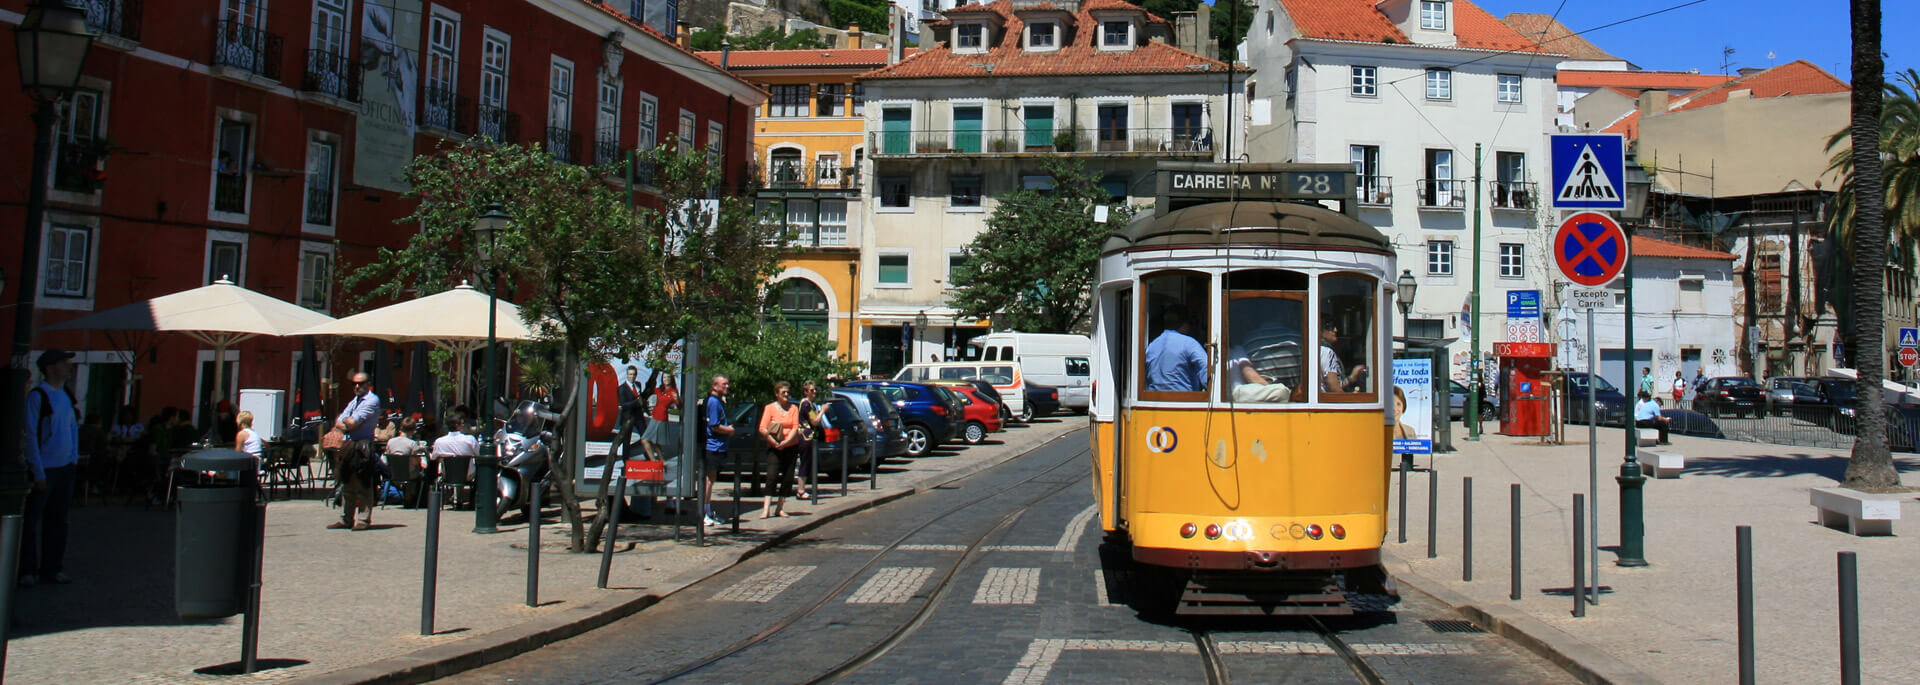 Fotos: Lissabon